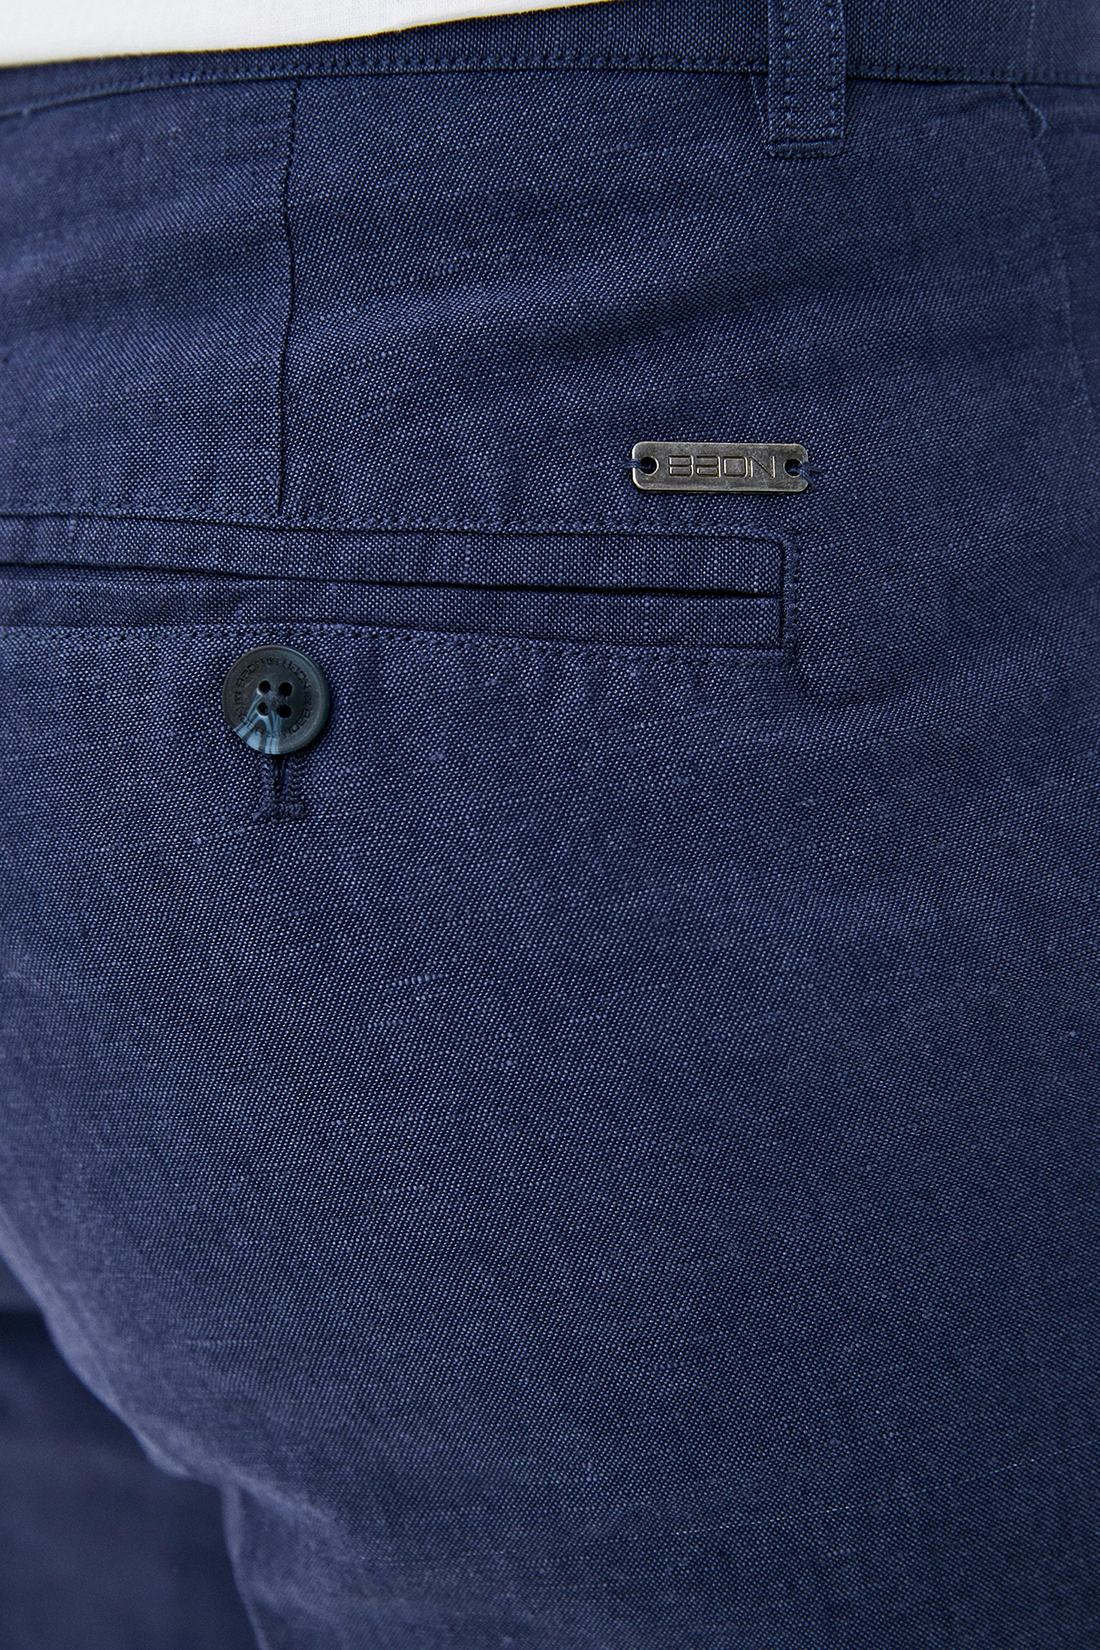 Льняные шорты (арт. baon B820002), размер XL, цвет синий Льняные шорты (арт. baon B820002) - фото 3